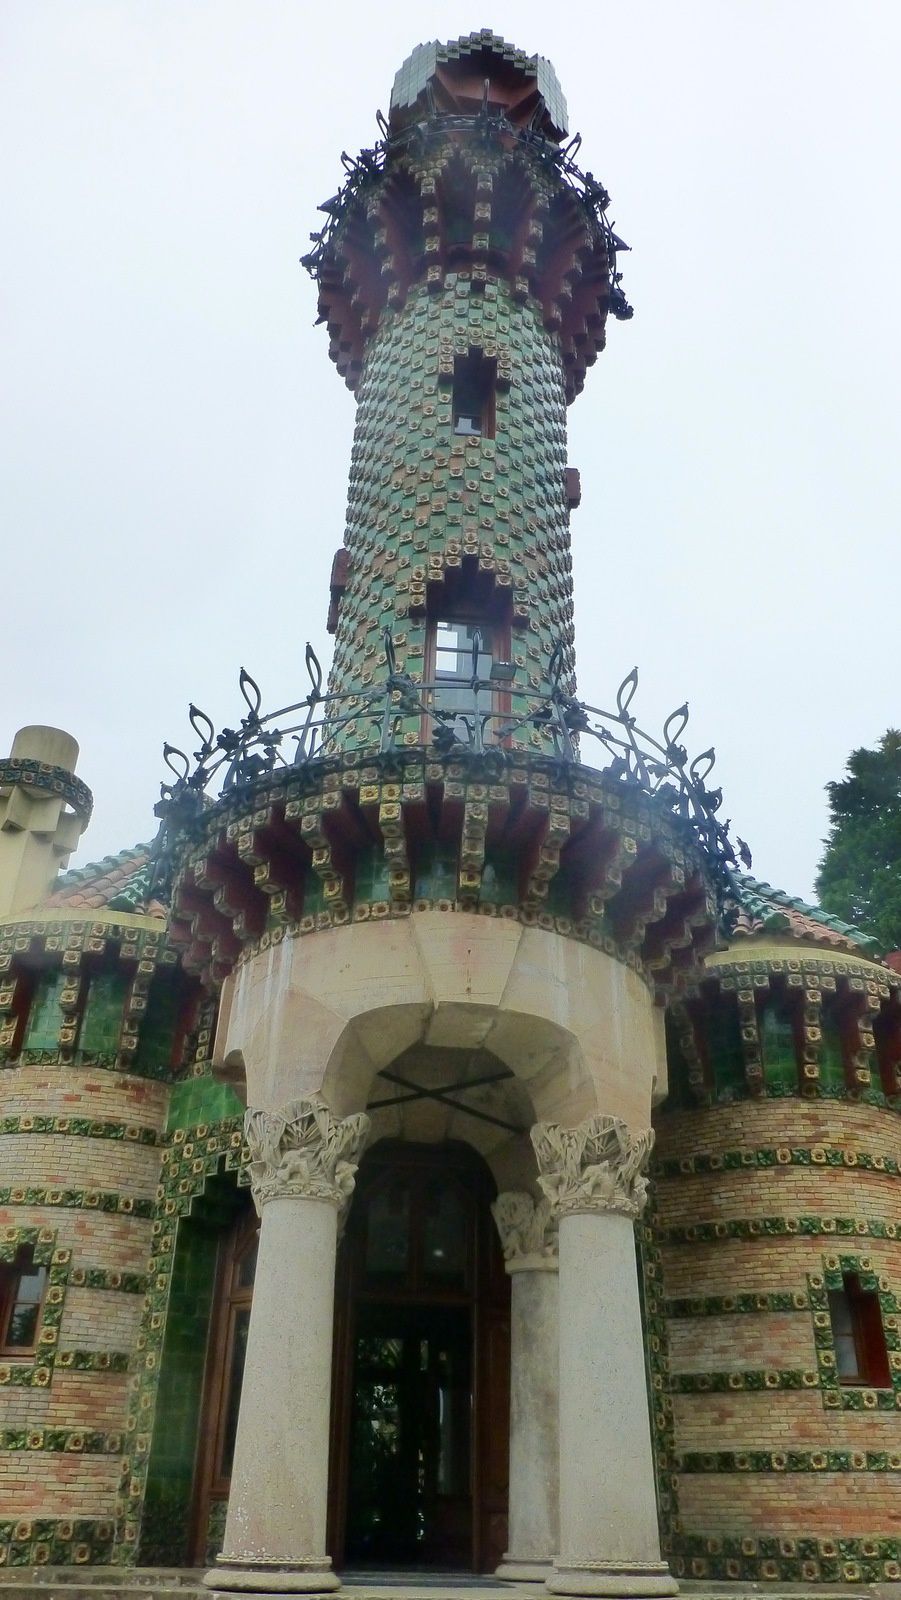 De beaux paysages dans la brume et quelques surprises comme ces animaux venus d'ailleurs et bien sûr Gaudi a l'arrivee